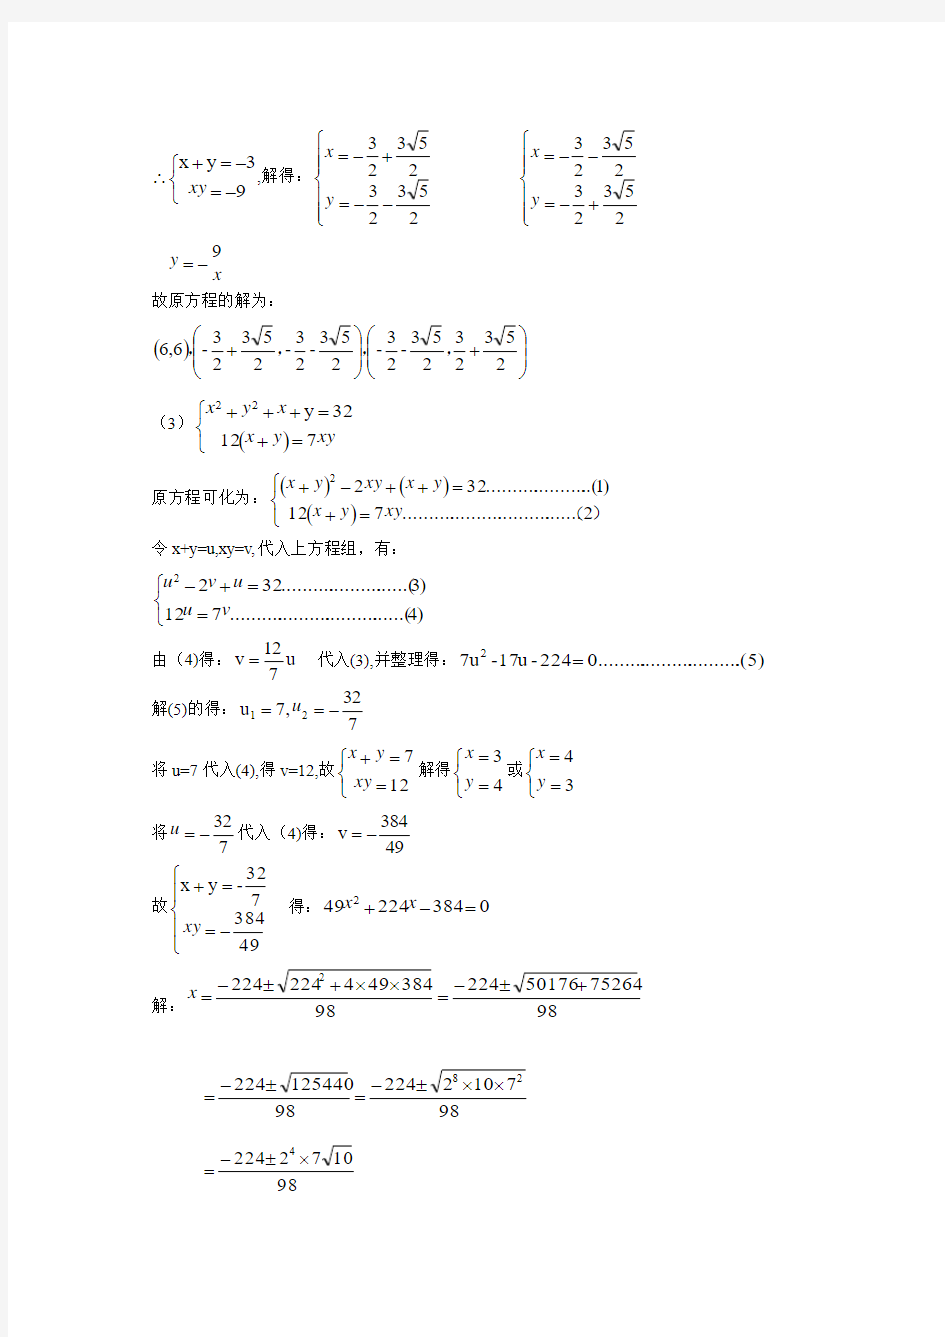 初等数学研究答案 李长明 周焕山编习题4(1)答案